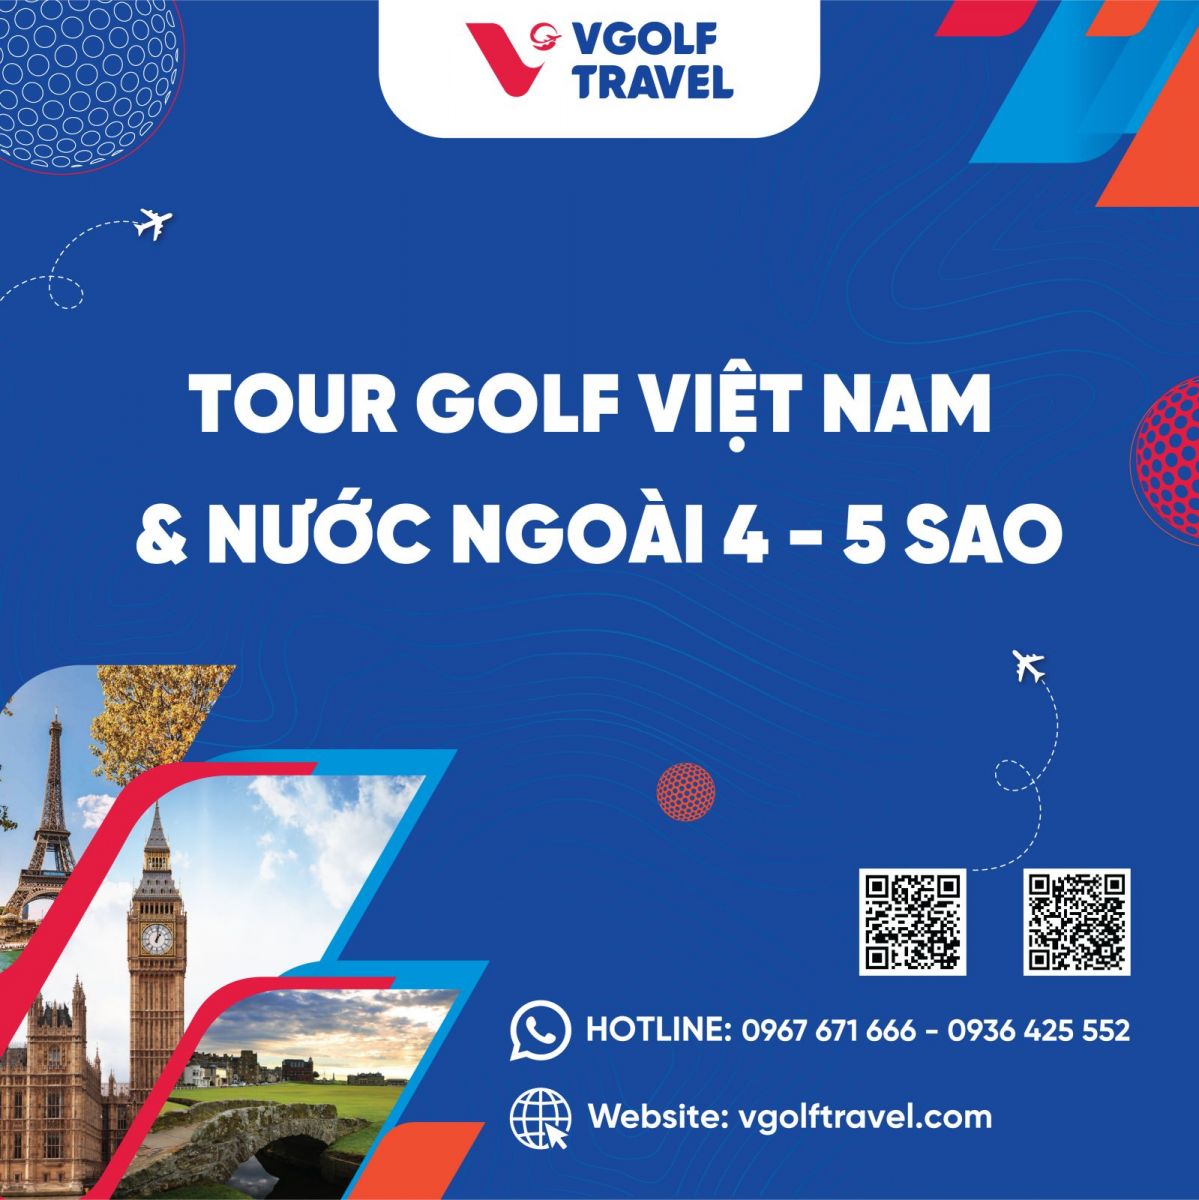 VGolf Travel - Tour golf nước ngoài, tour golf Việt Nam cao cấp